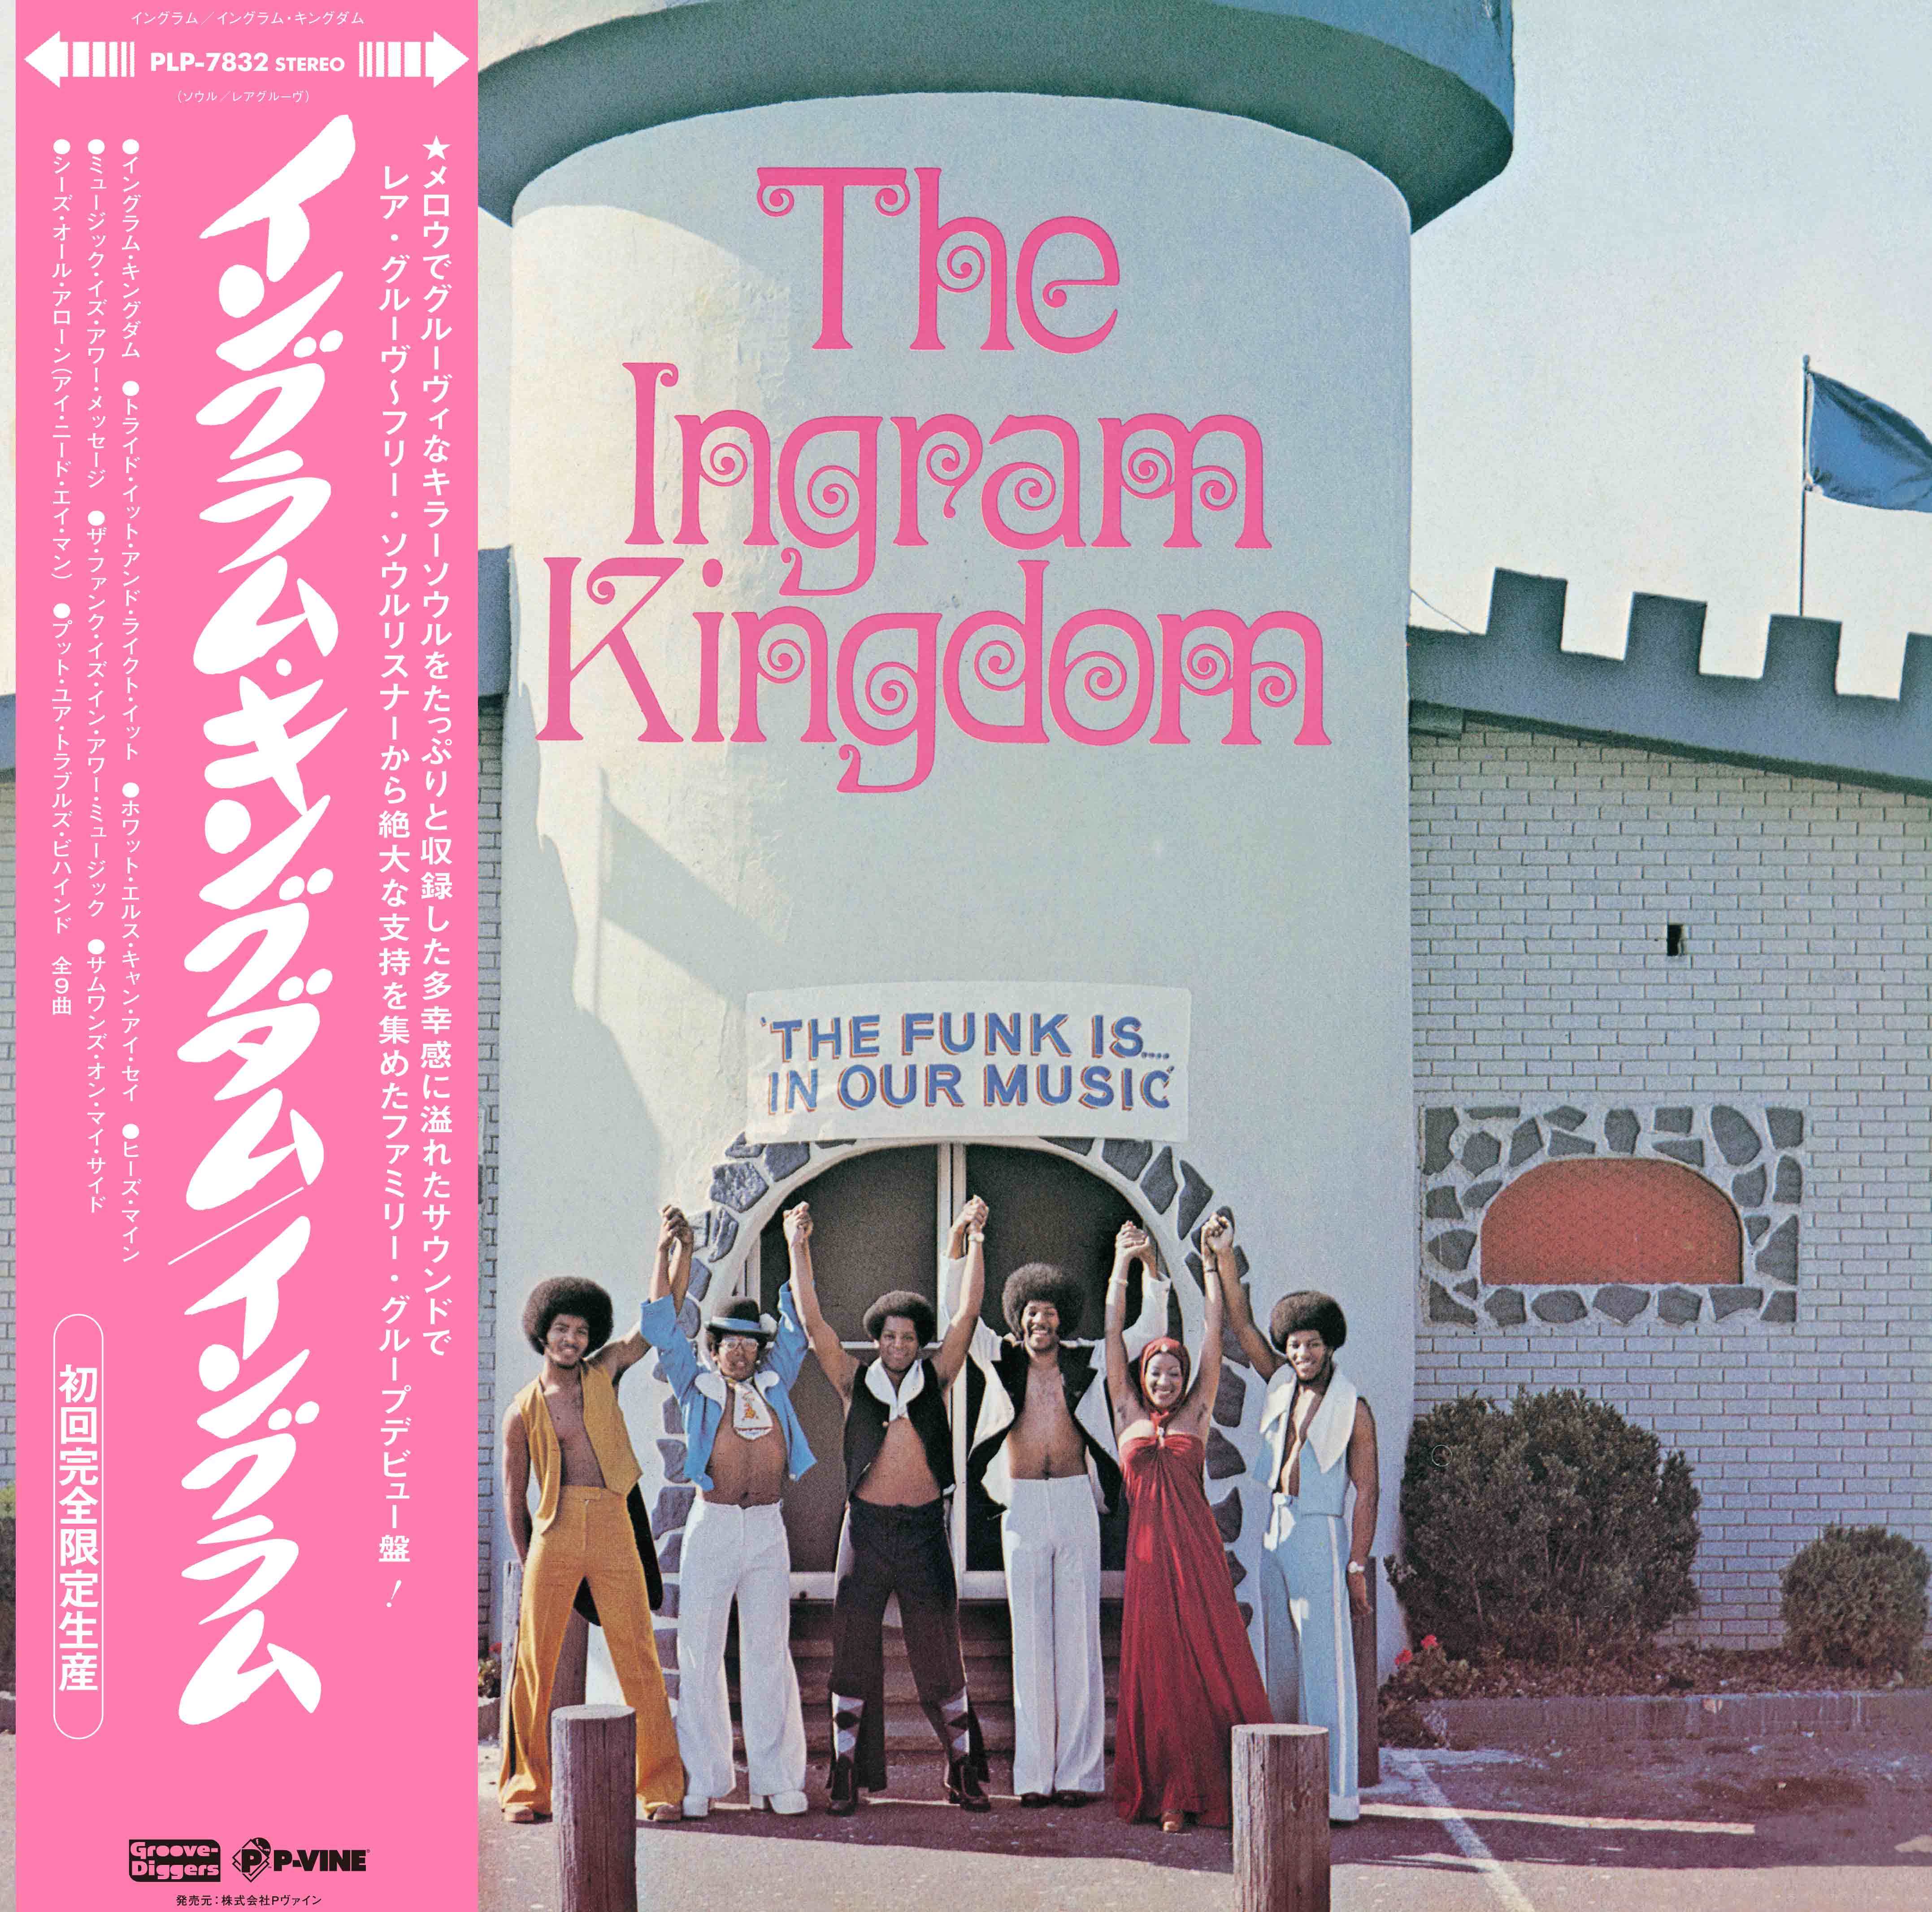 INGRAM「The Ingram Kingdom」